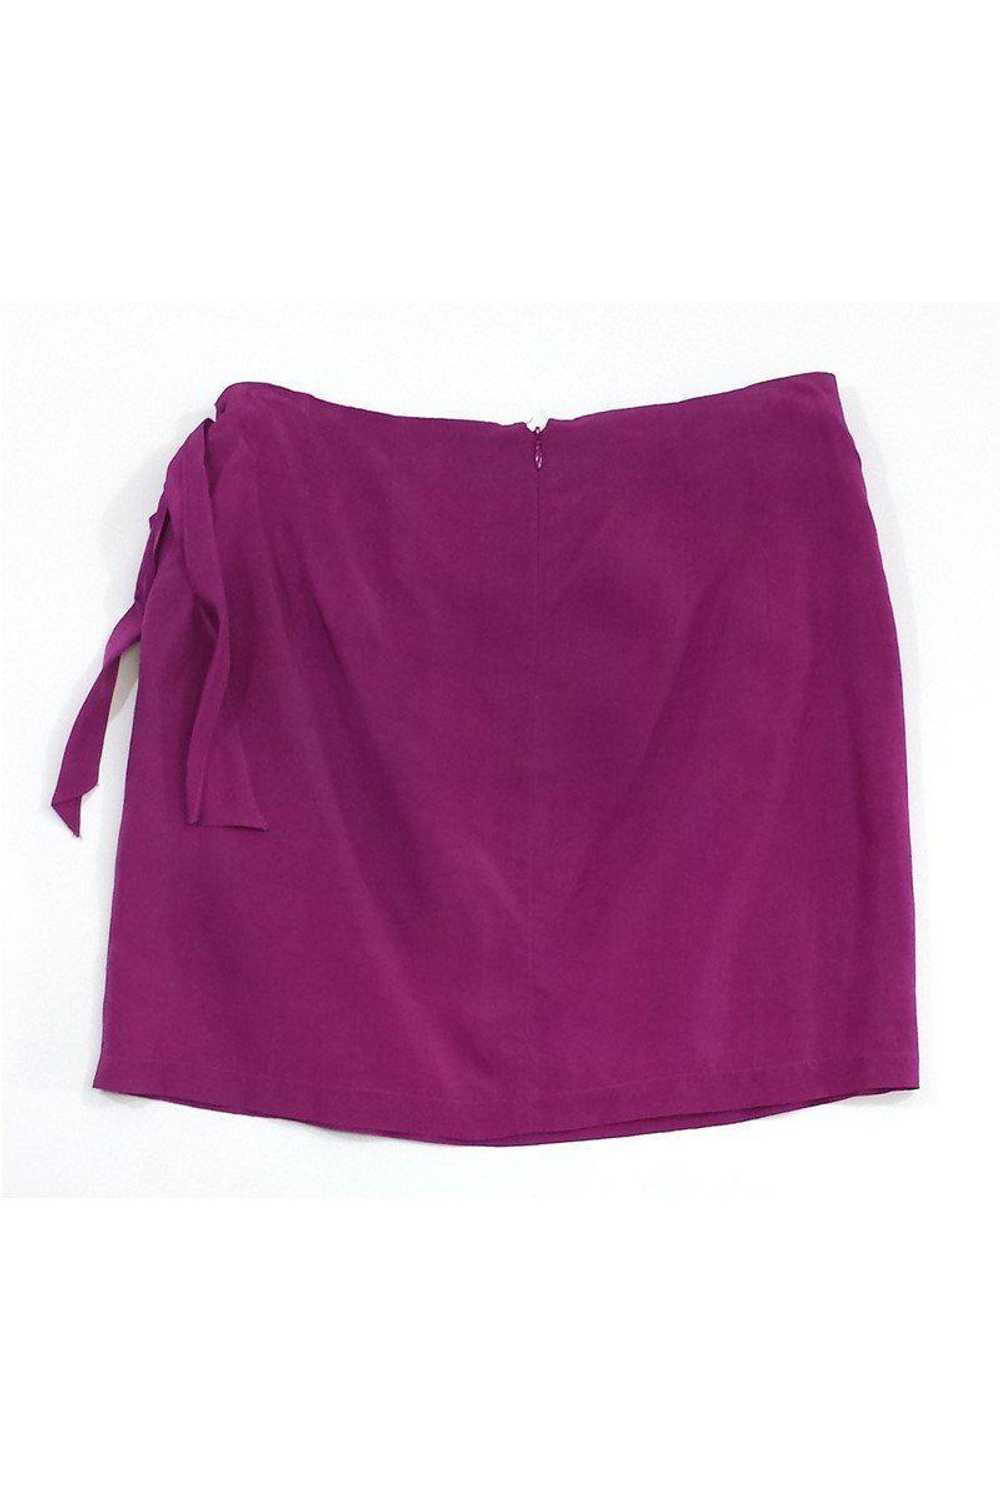 Nanette Lepore - Violet Ruffle Bow Silk Skirt Sz 6 - image 1